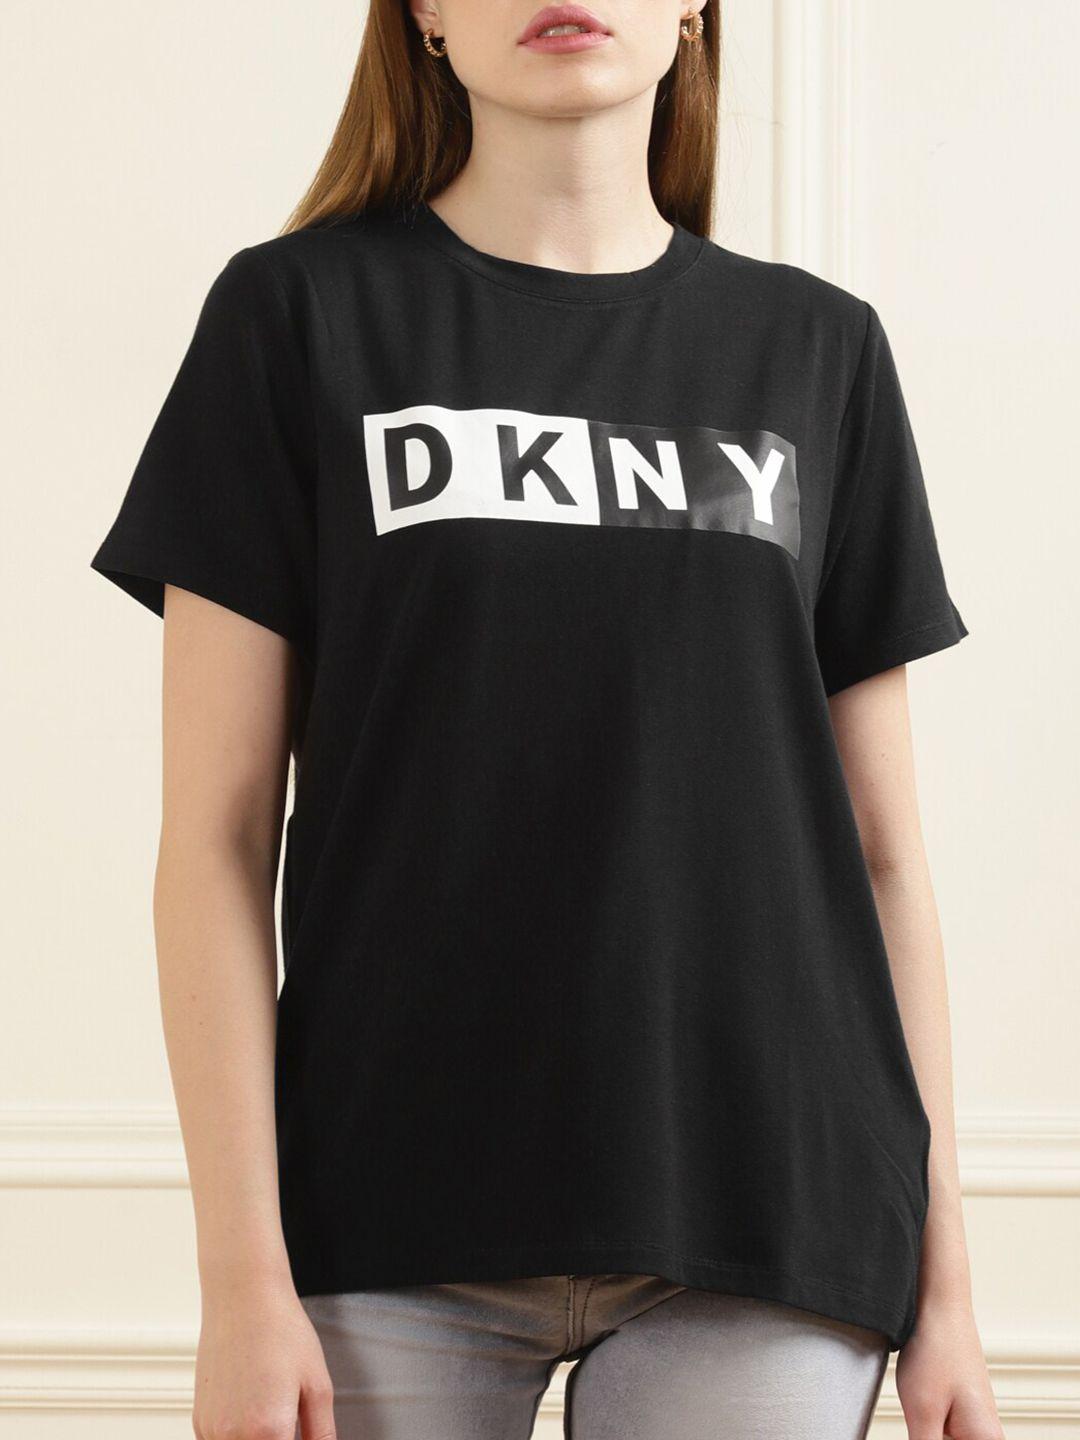 dkny women black & white logo print cotton t-shirt